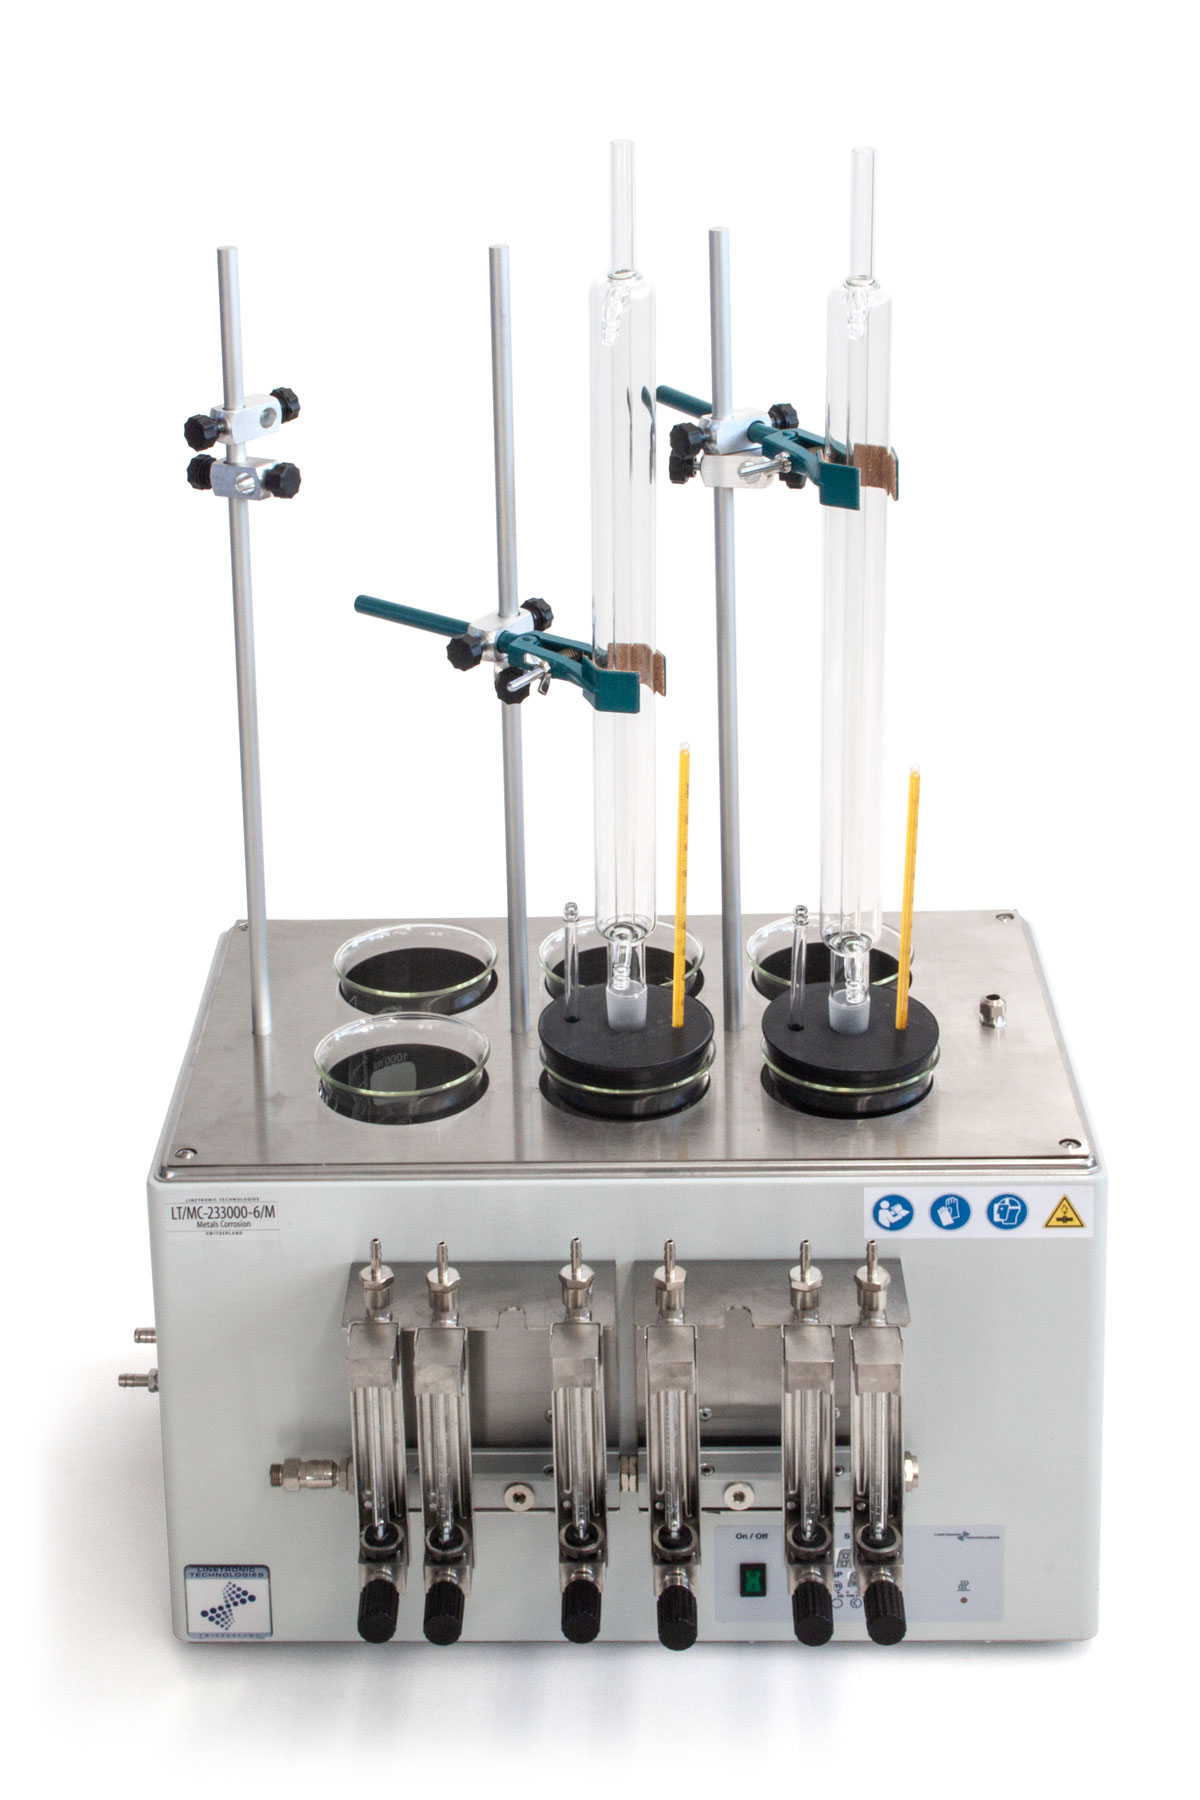 MC-233006/M: Test di corrosività dei liquidi di raffreddamento in vetreria